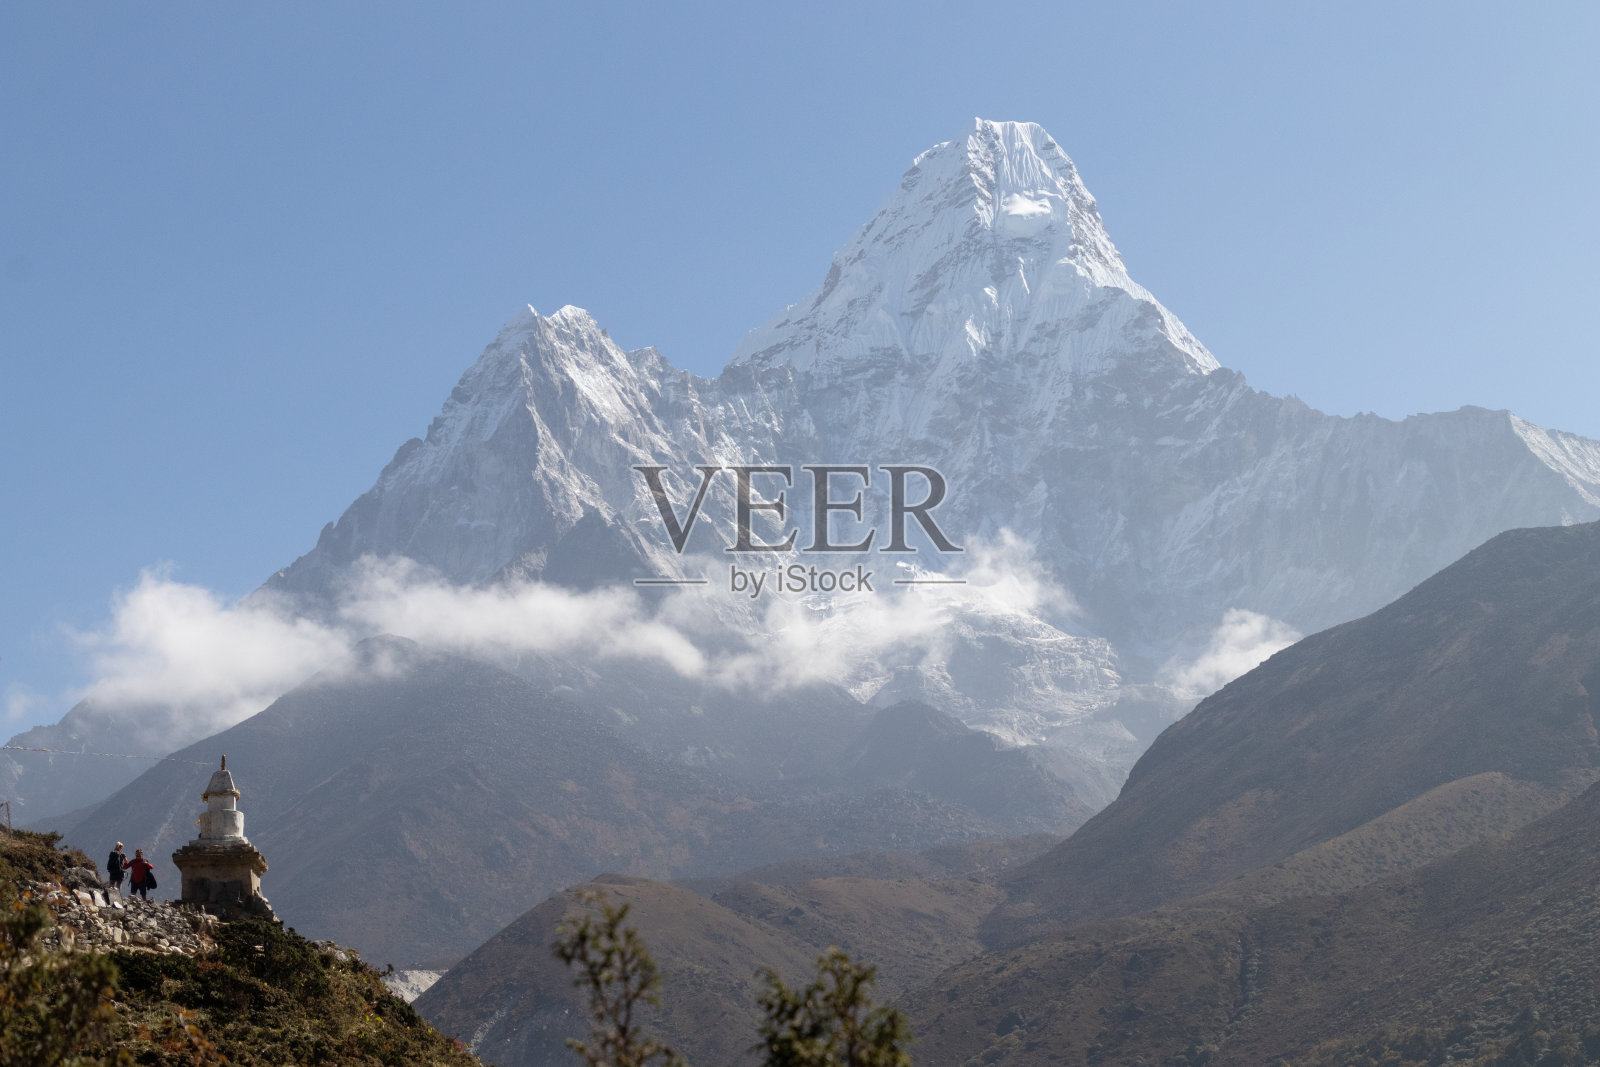 阿玛达布拉姆山是尼泊尔东部喜马拉雅山脉的一座山。主峰海拔6812米，较低的西峰海拔6170米照片摄影图片